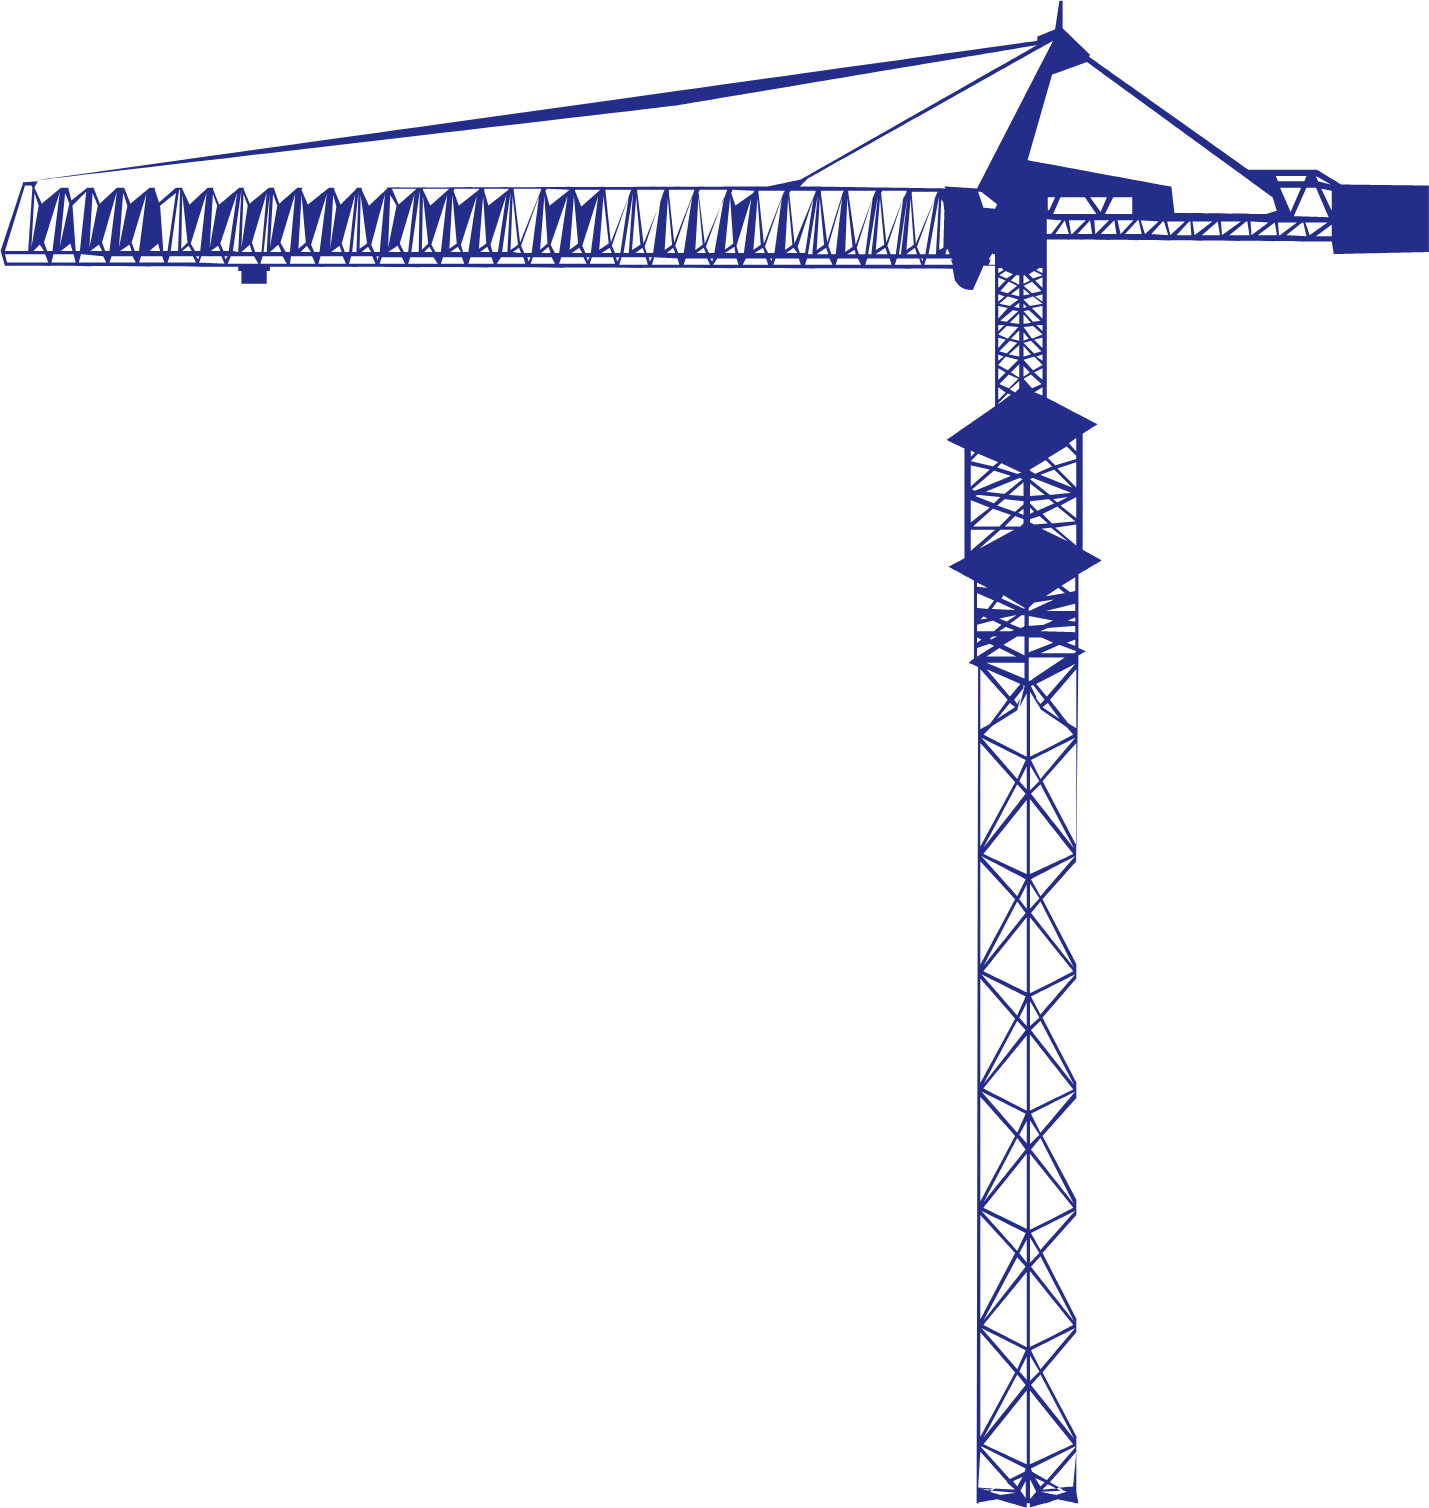 Makkah Construction & Development logo (PNG transparent)